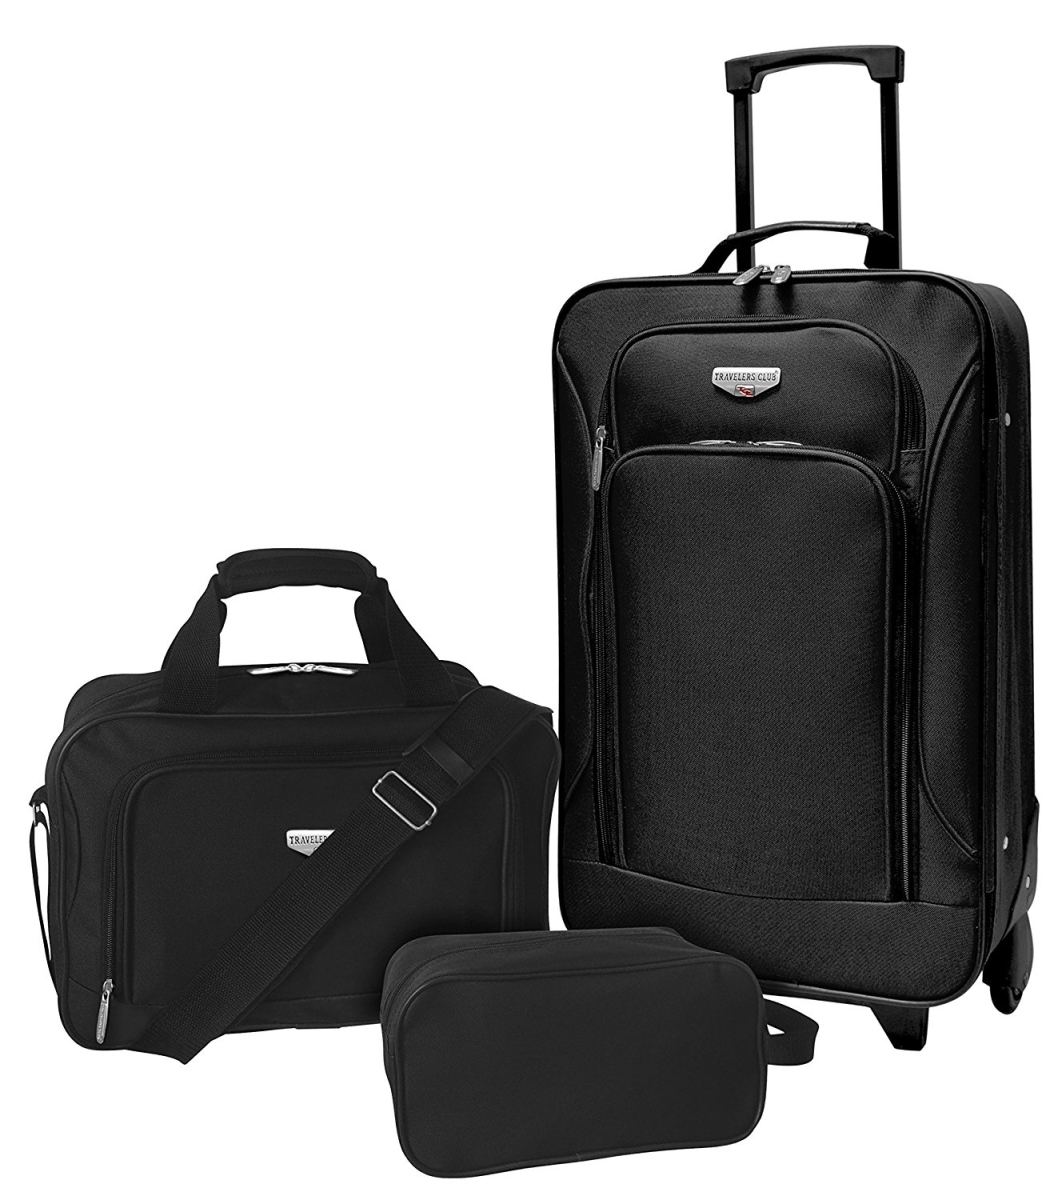 Eva-12203-001 Euro Value Ii 3 Piece Softside Luggage Set, Black